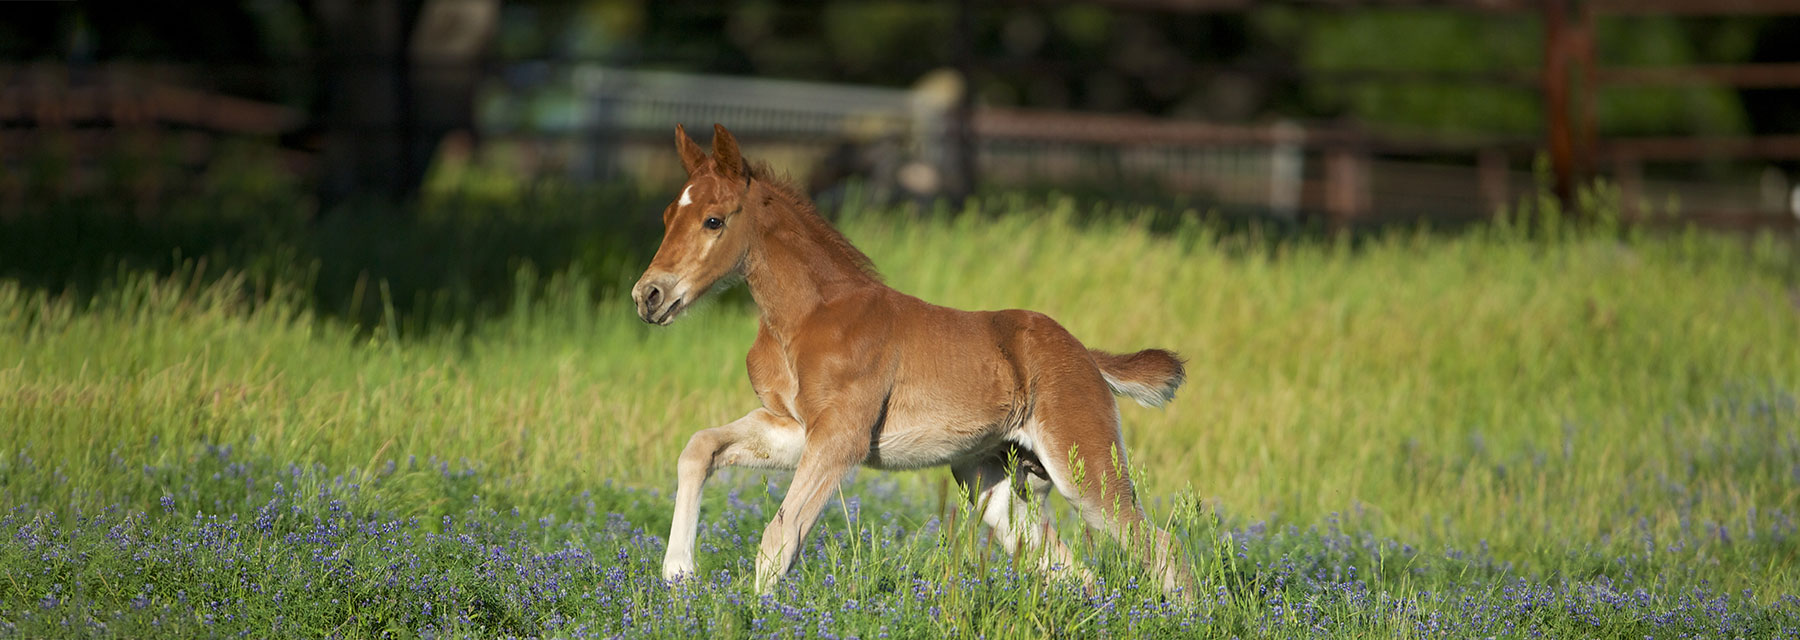 foal running through field